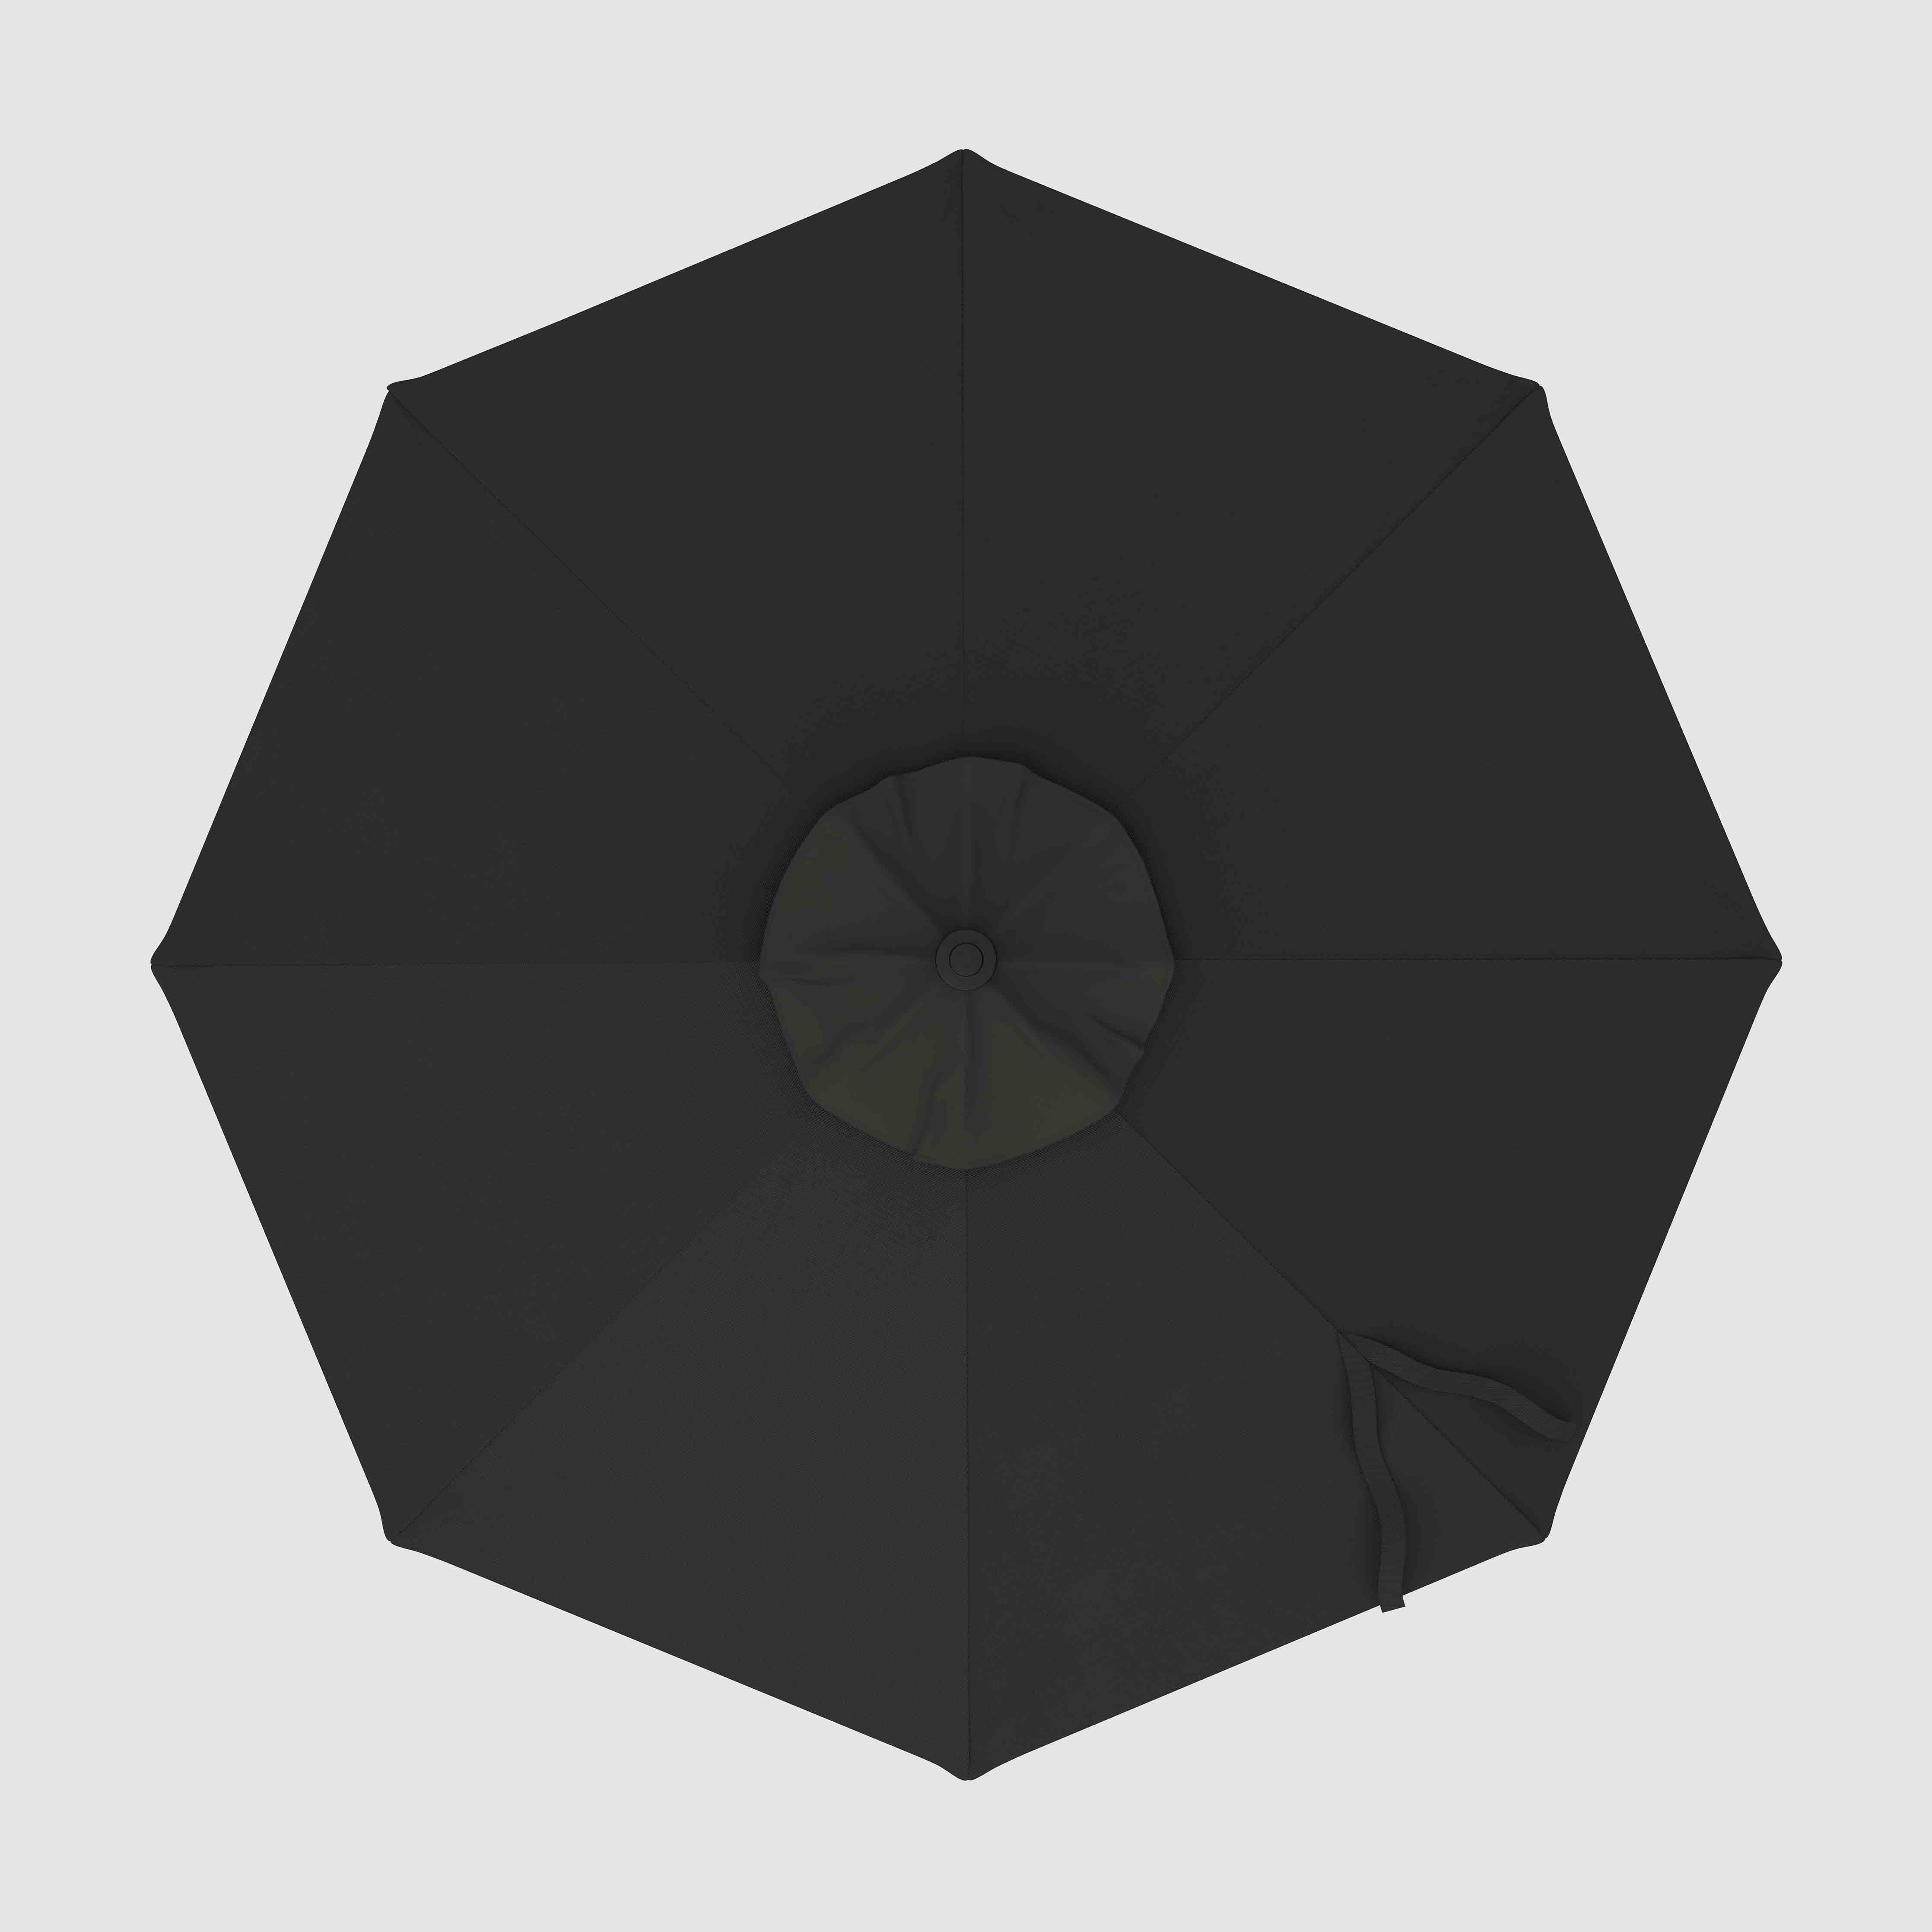 The Lean™ - Sunbrella Black